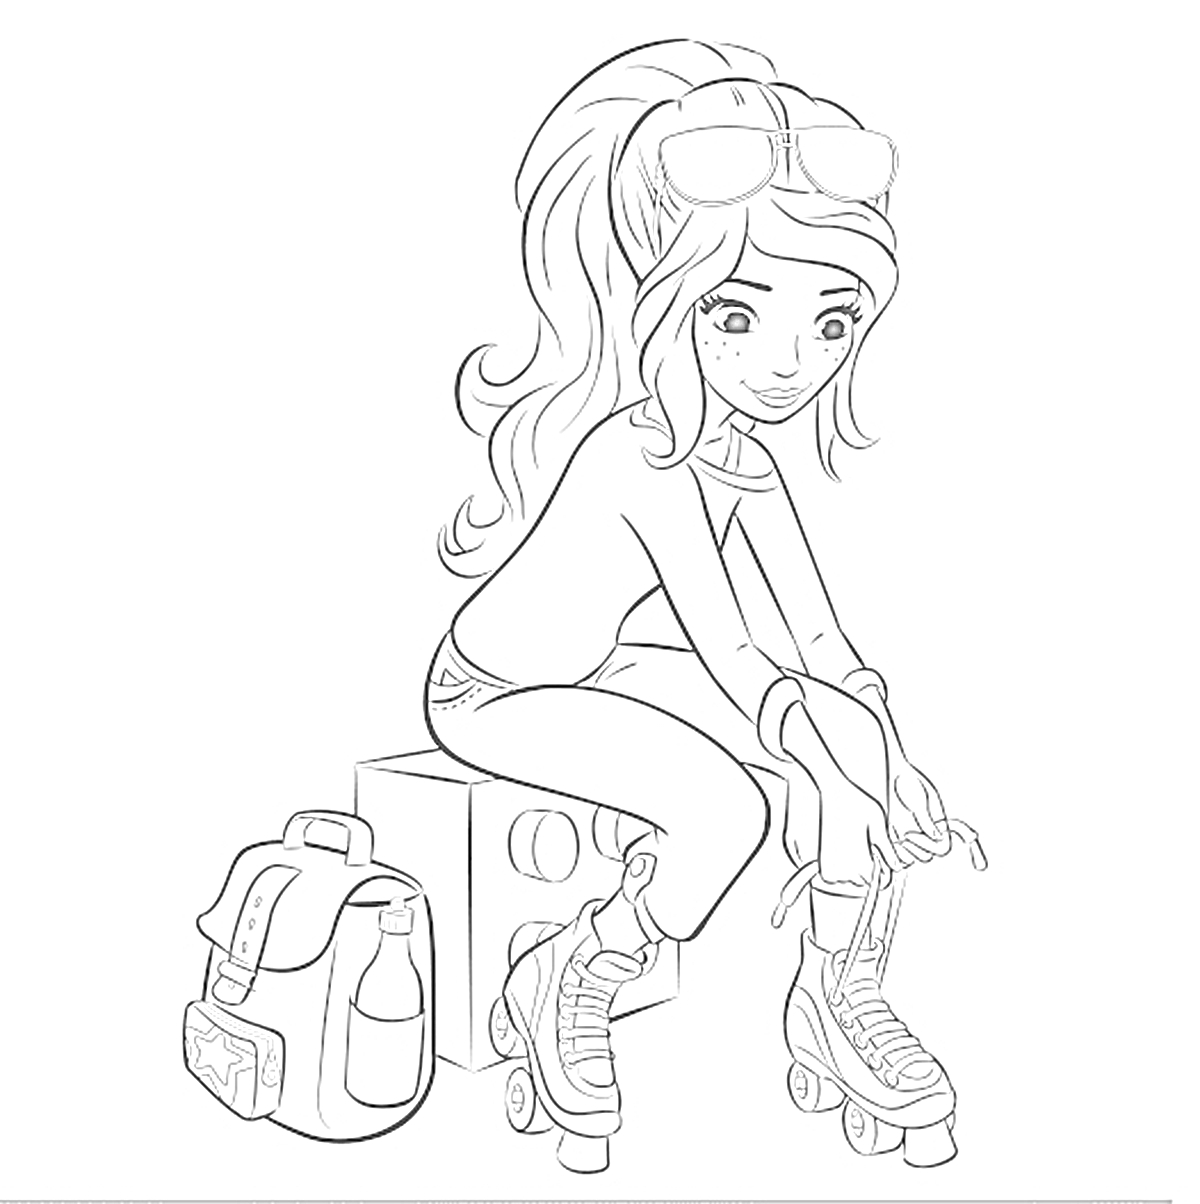 Раскраска Девочка с рюкзаком и роликовыми коньками сидит на коробке